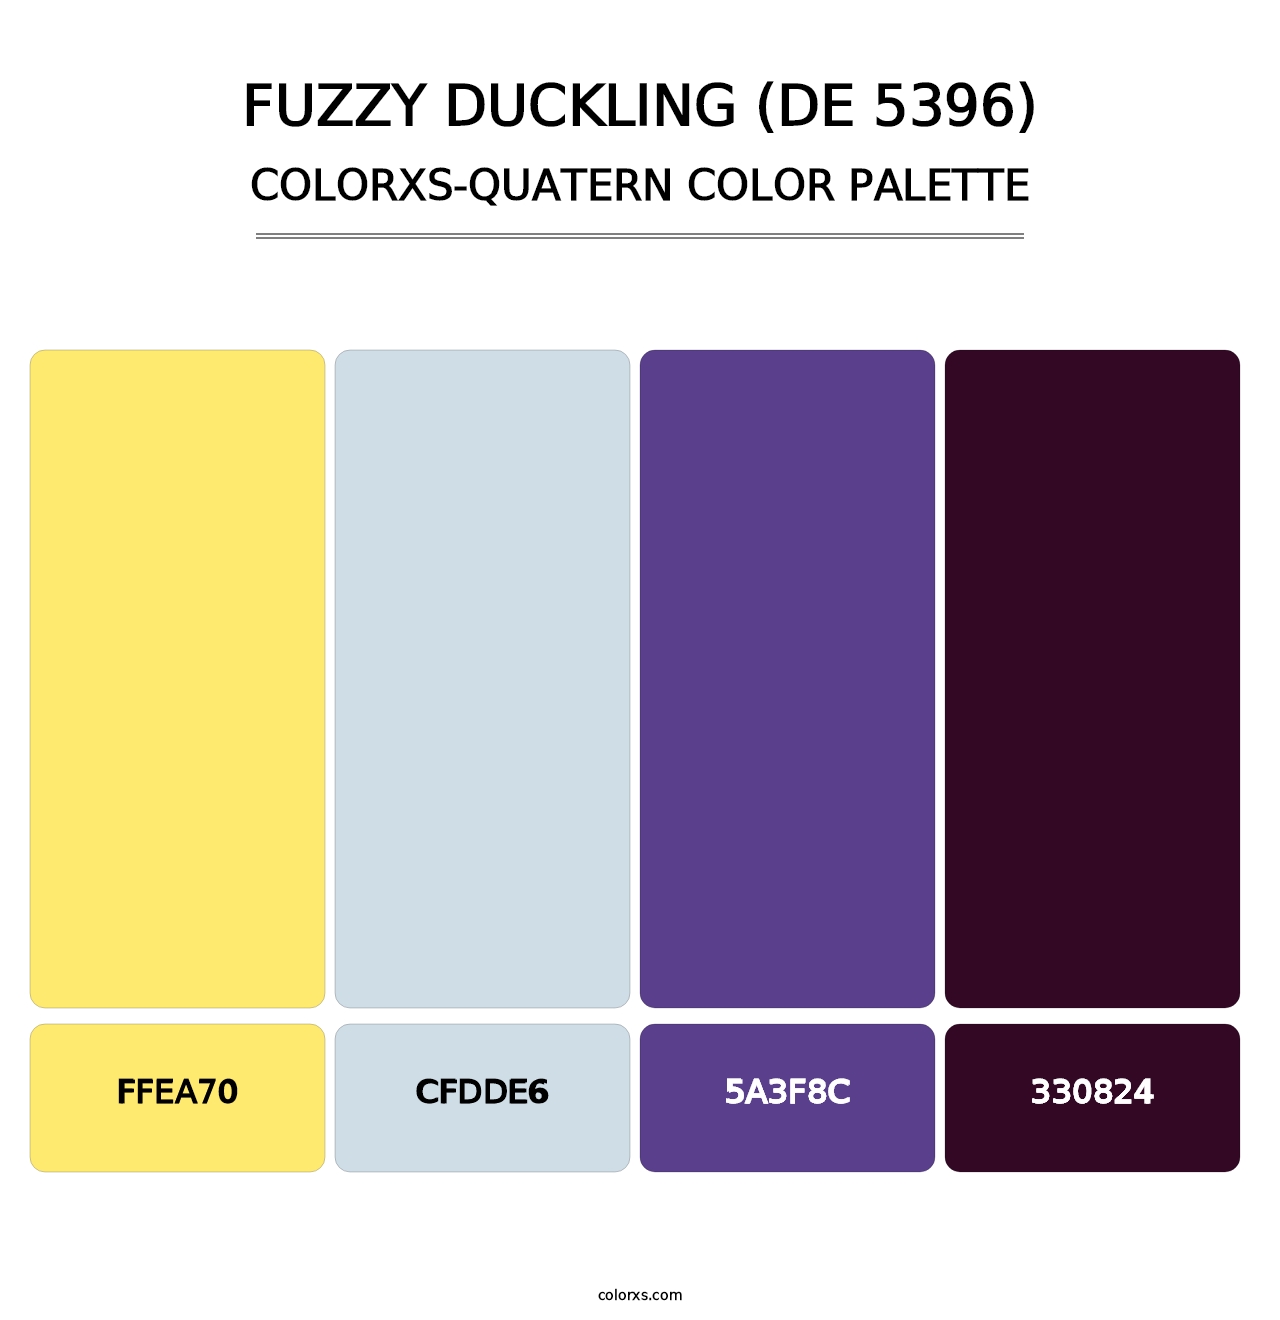 Fuzzy Duckling (DE 5396) - Colorxs Quatern Palette